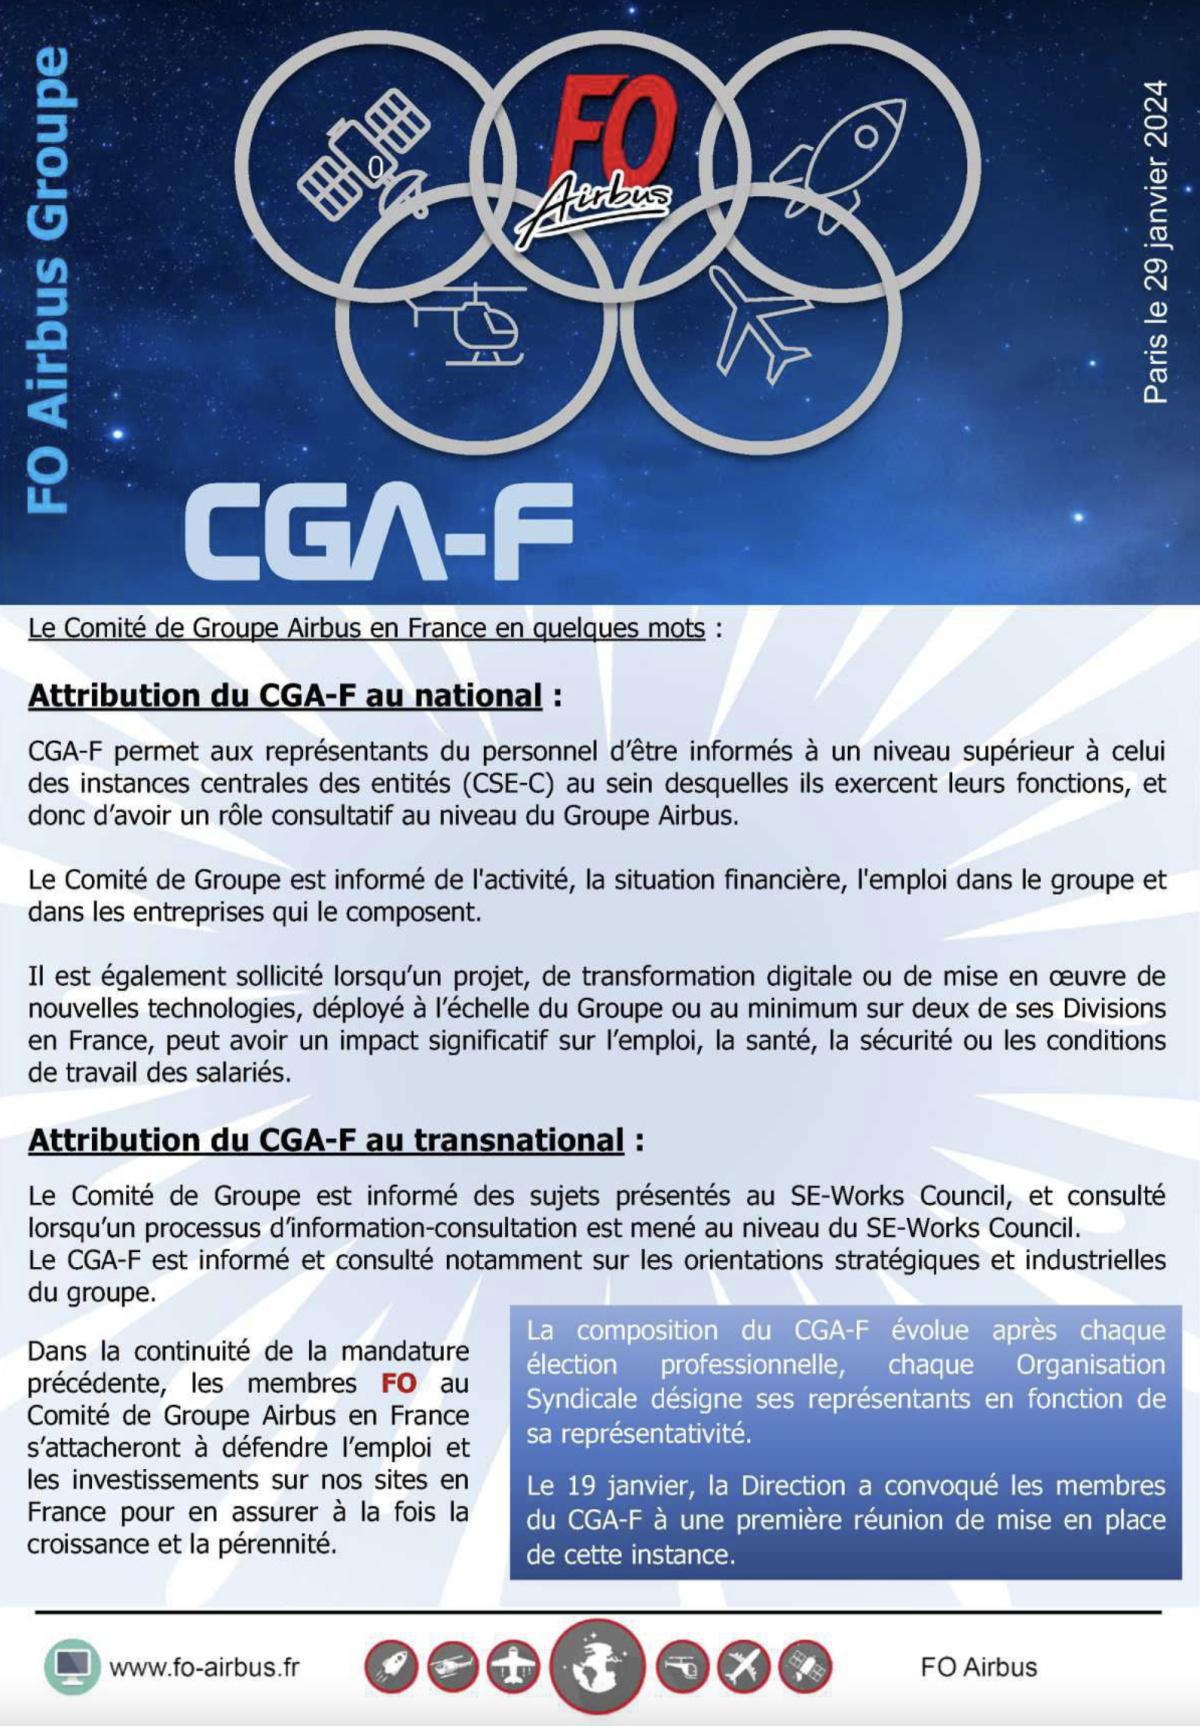 Les membres du CGAF (comité de groupe Airbus en France)